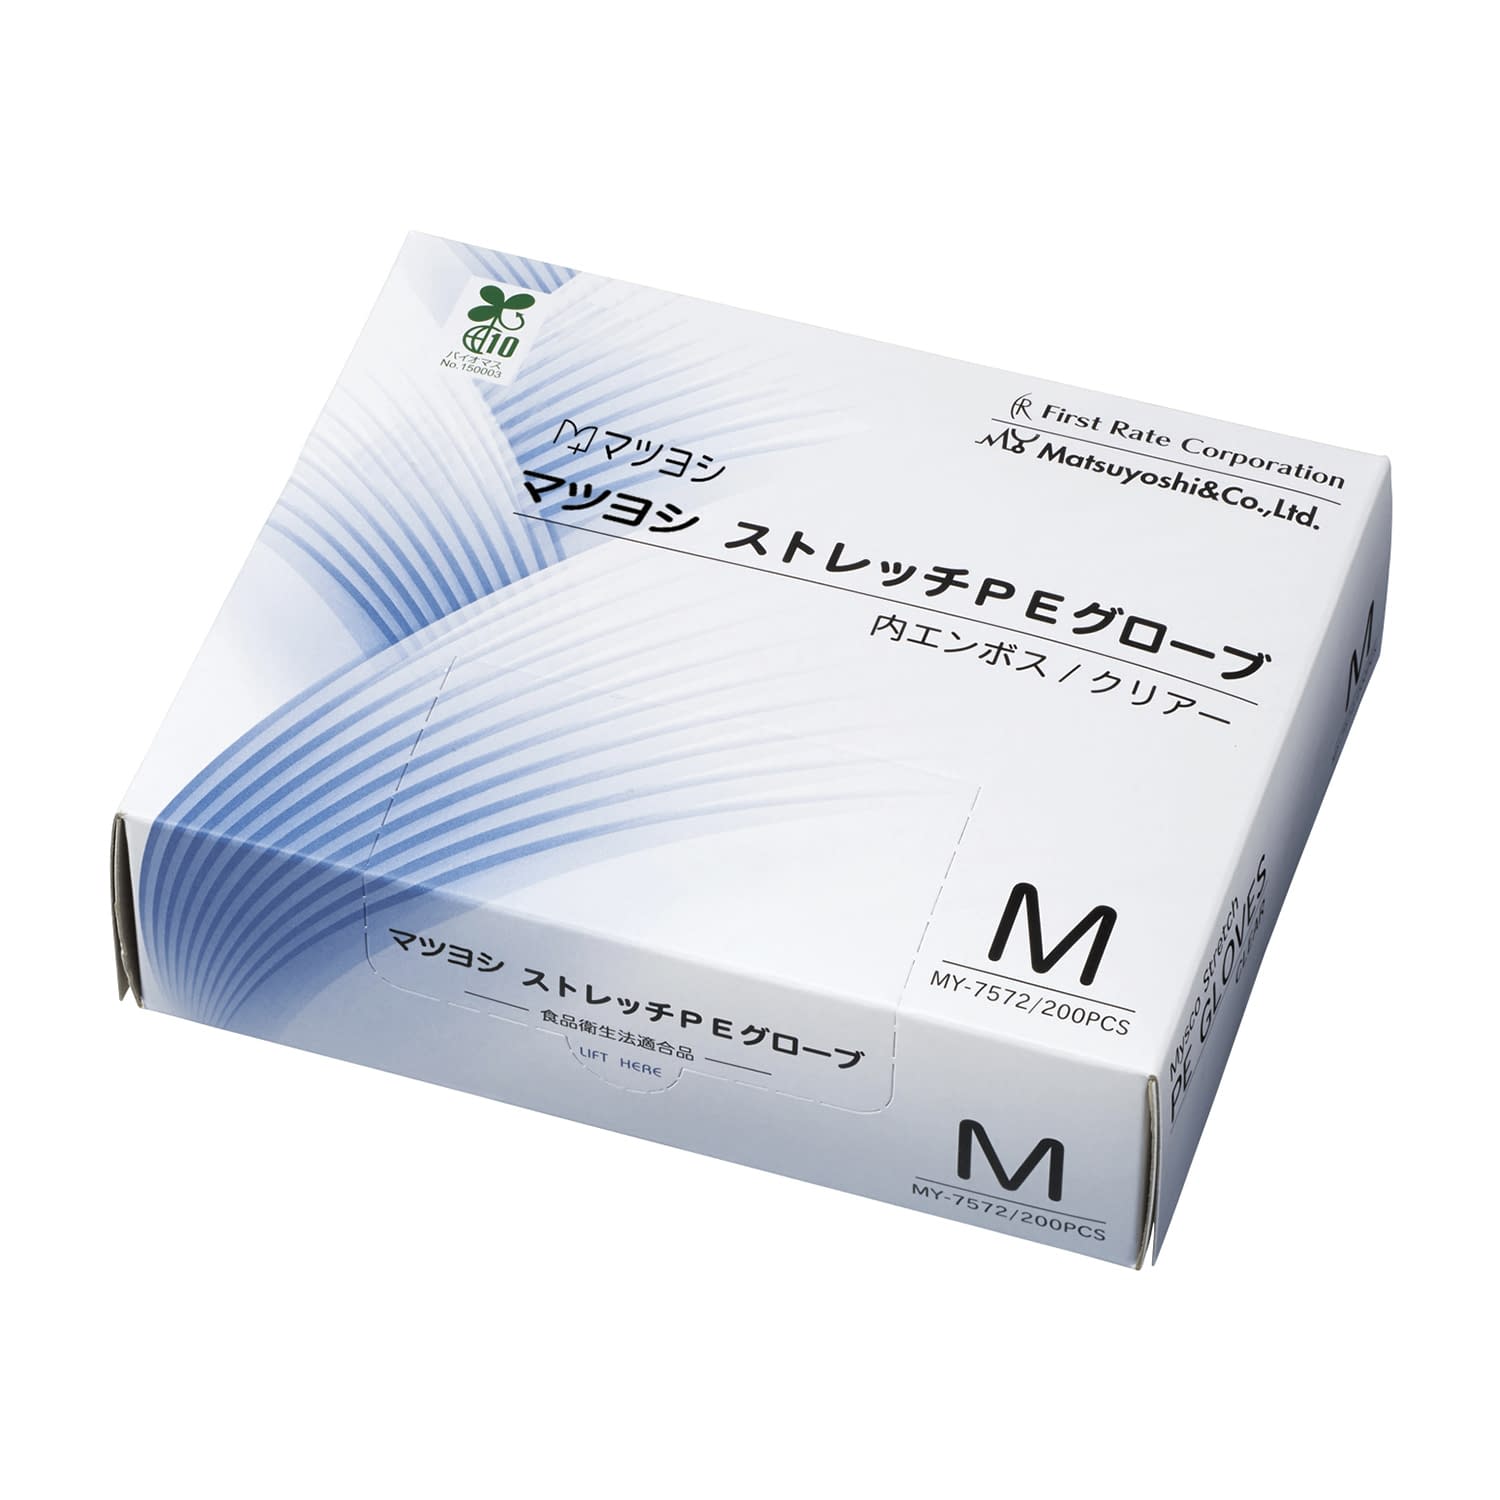 マツヨシ　ストレッチＰＥグローブ MY-7572(M)200ﾏｲX40ﾊｺ M 200枚×40箱【マツヨシ】(MY-7572)(24-5750-11)